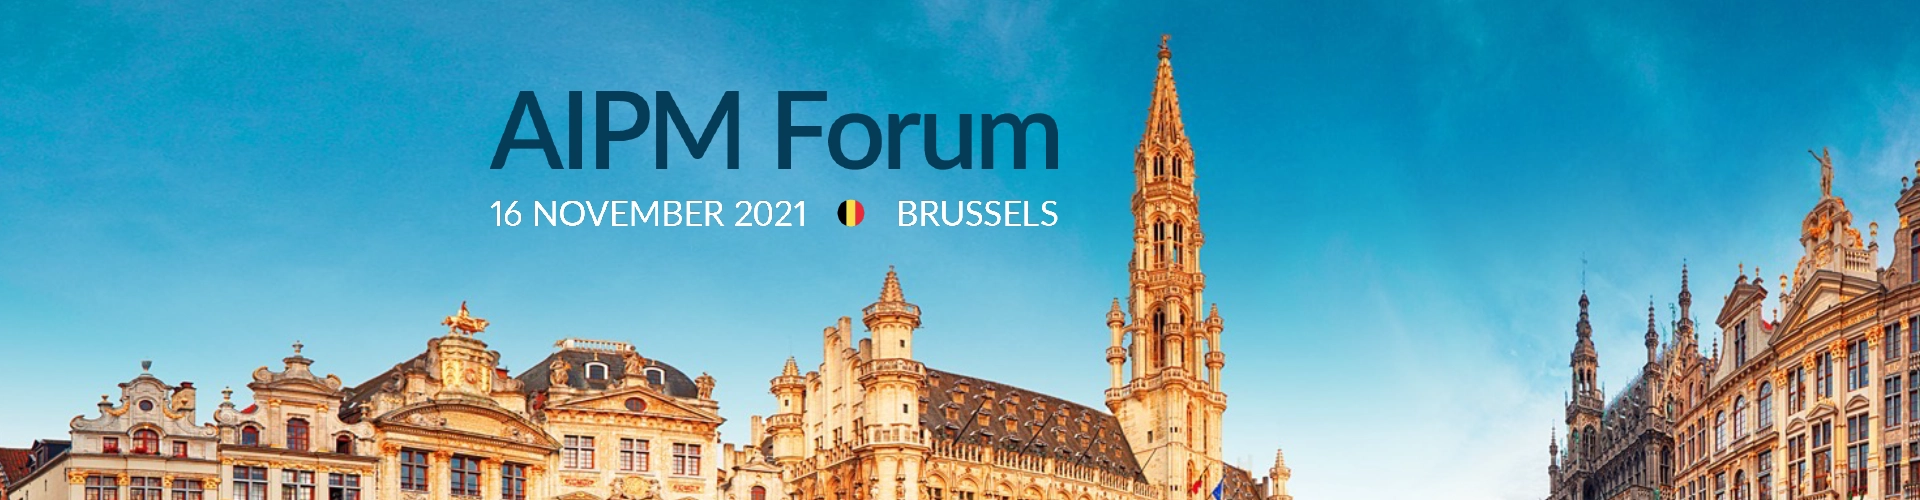 Blog Hero 2021 Brussels AIPM Forum - Copperleaf Decision Analytics